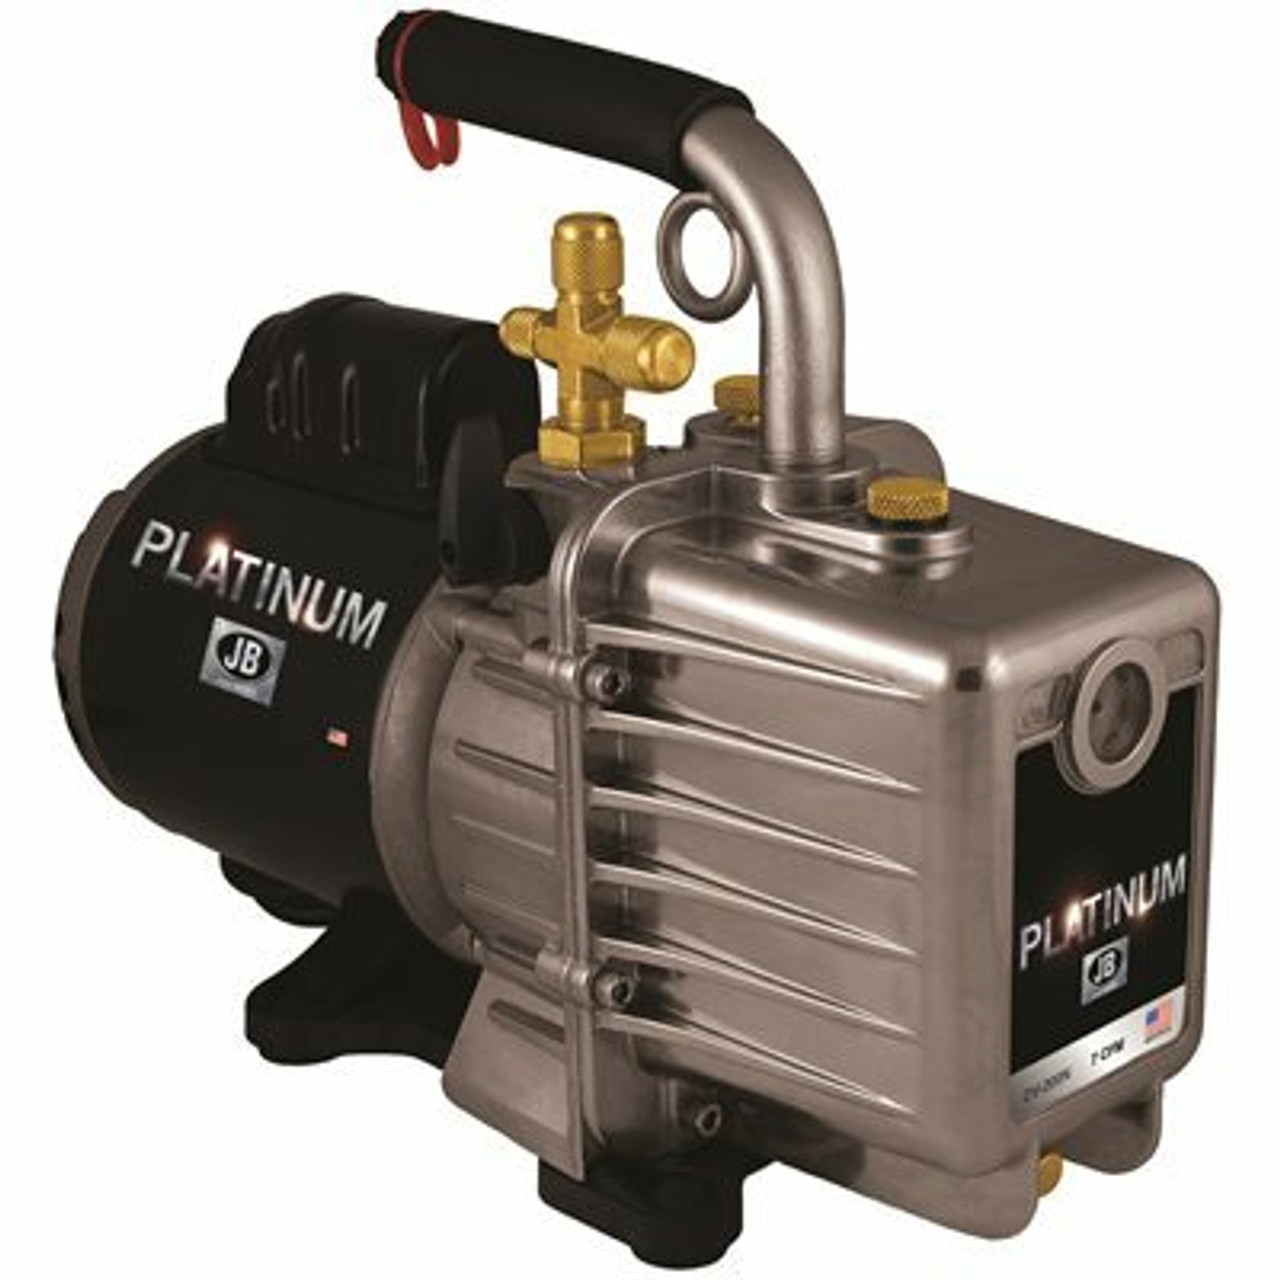 Jb Industries Platinum 7 Cfm Vacuum Pump